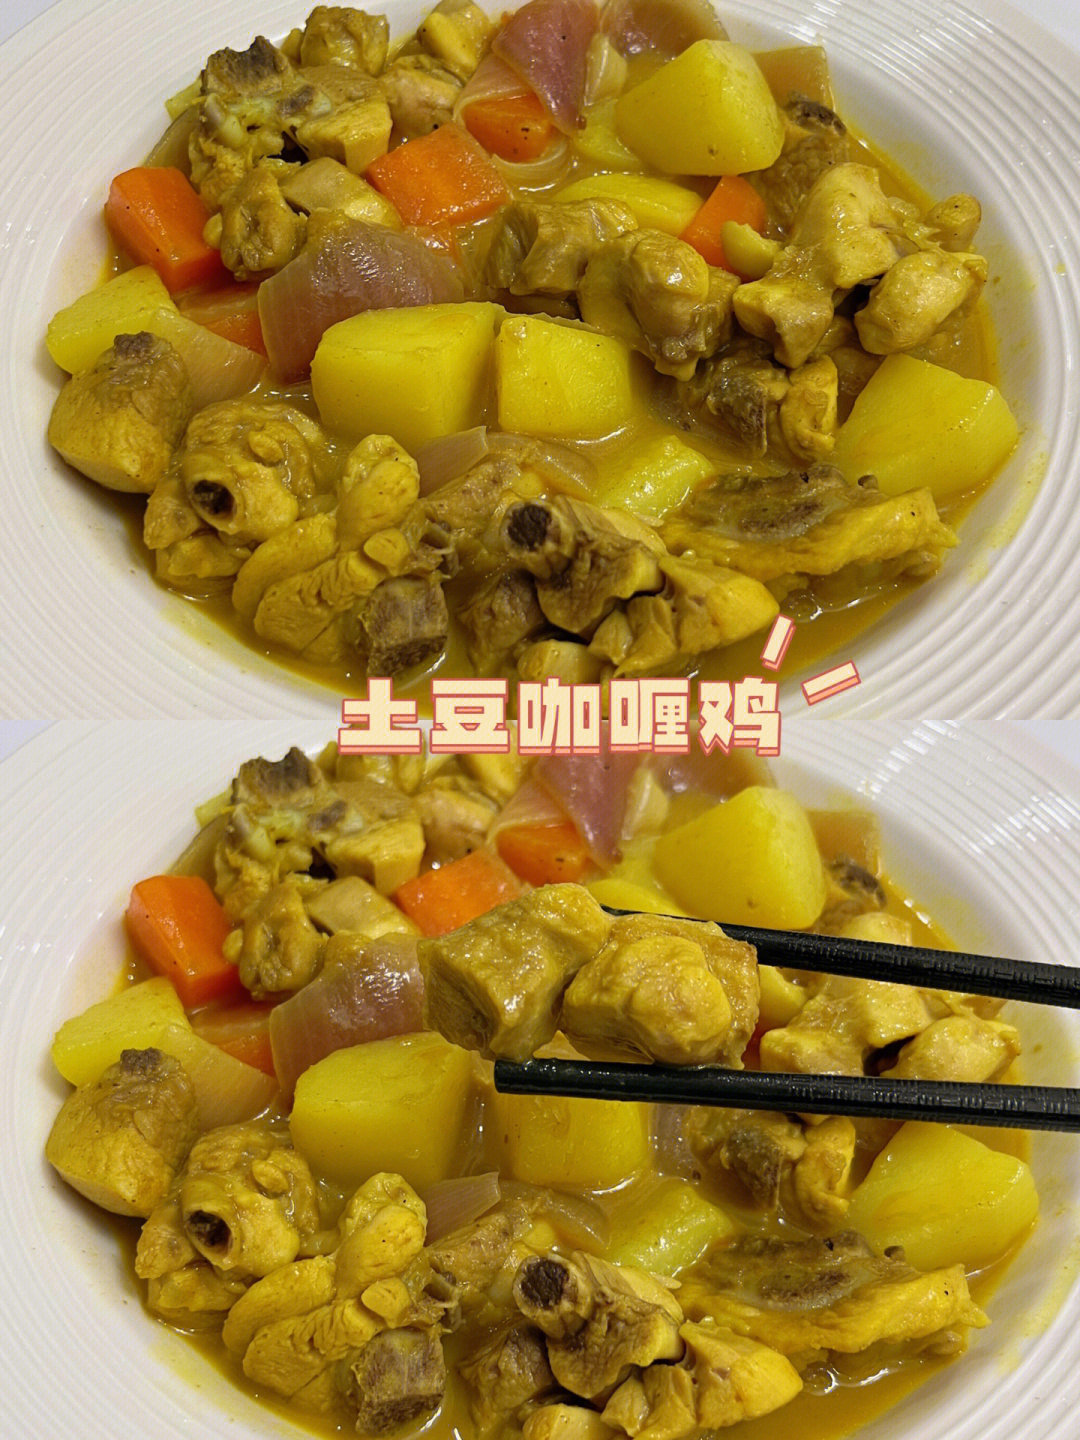 鸡腿肉,胡萝卜09,土豆,洋葱,小野轻煮咖喱懒人调料93做法:115